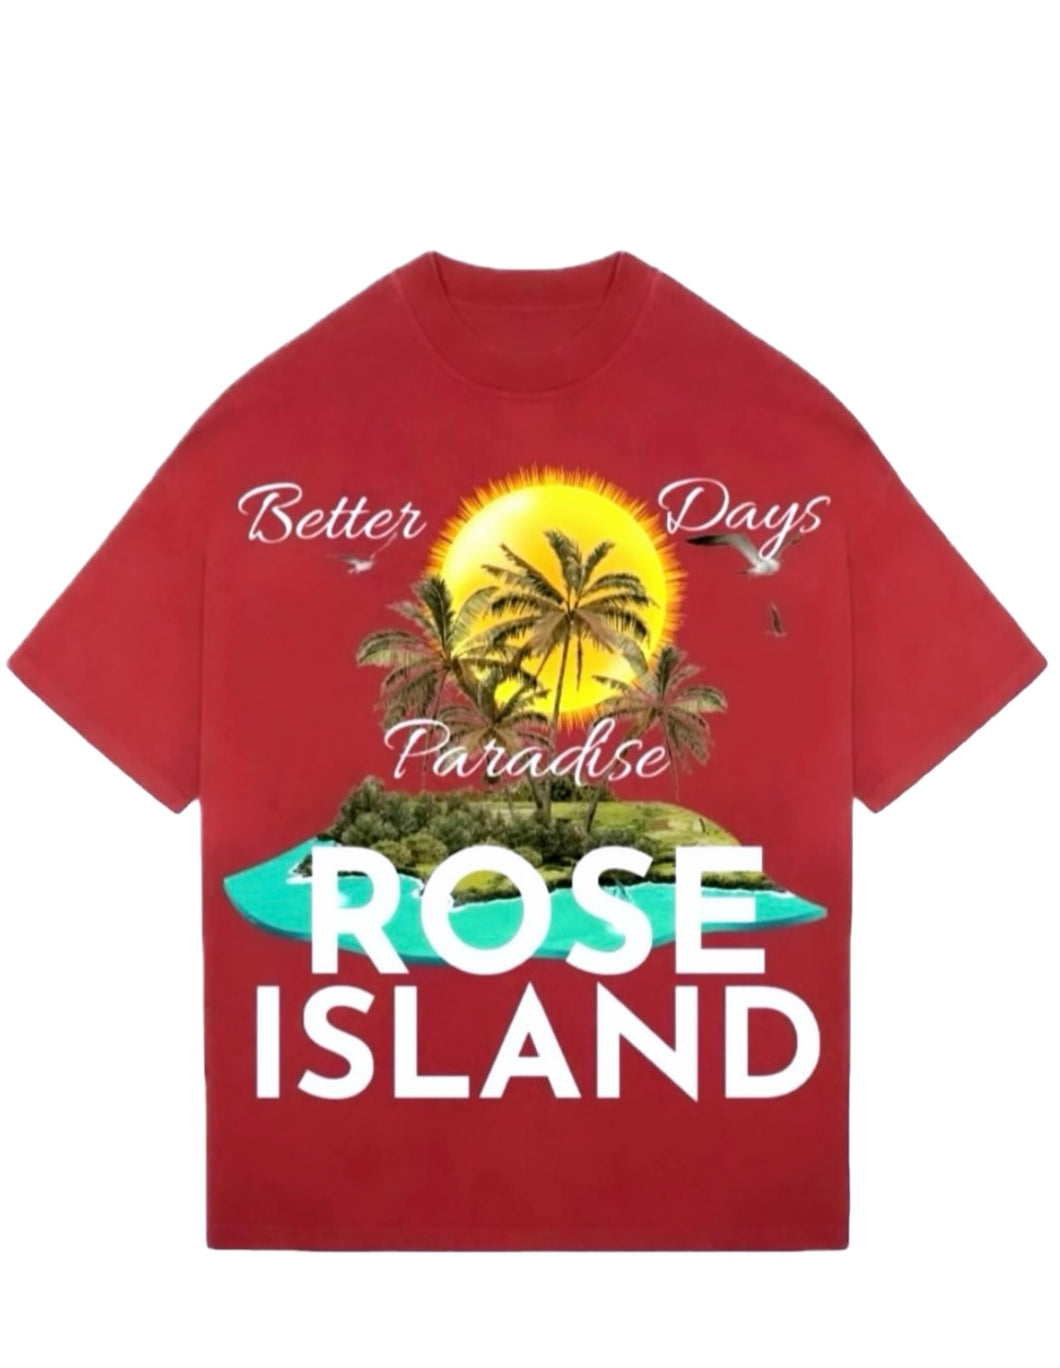 Rose Island Oversized T-Shirt